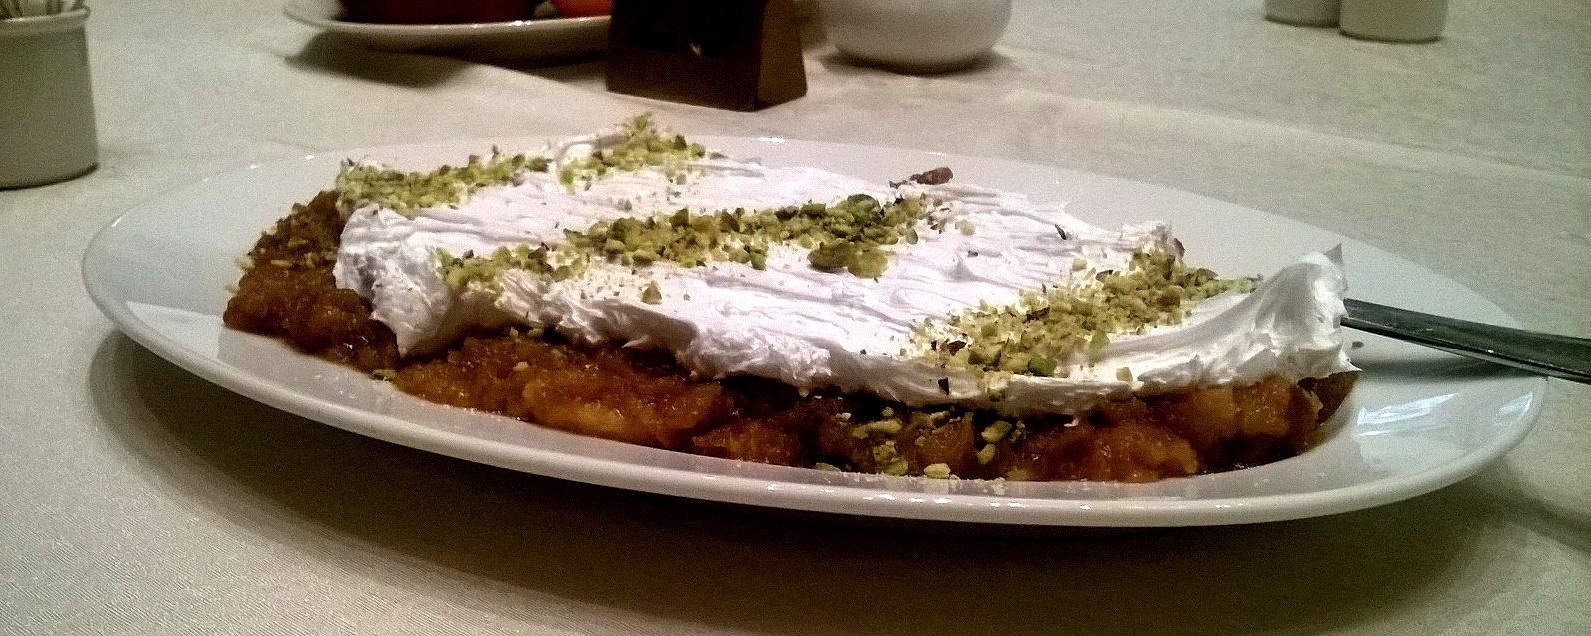 Aish el Saraya - mouth watering bread pudding